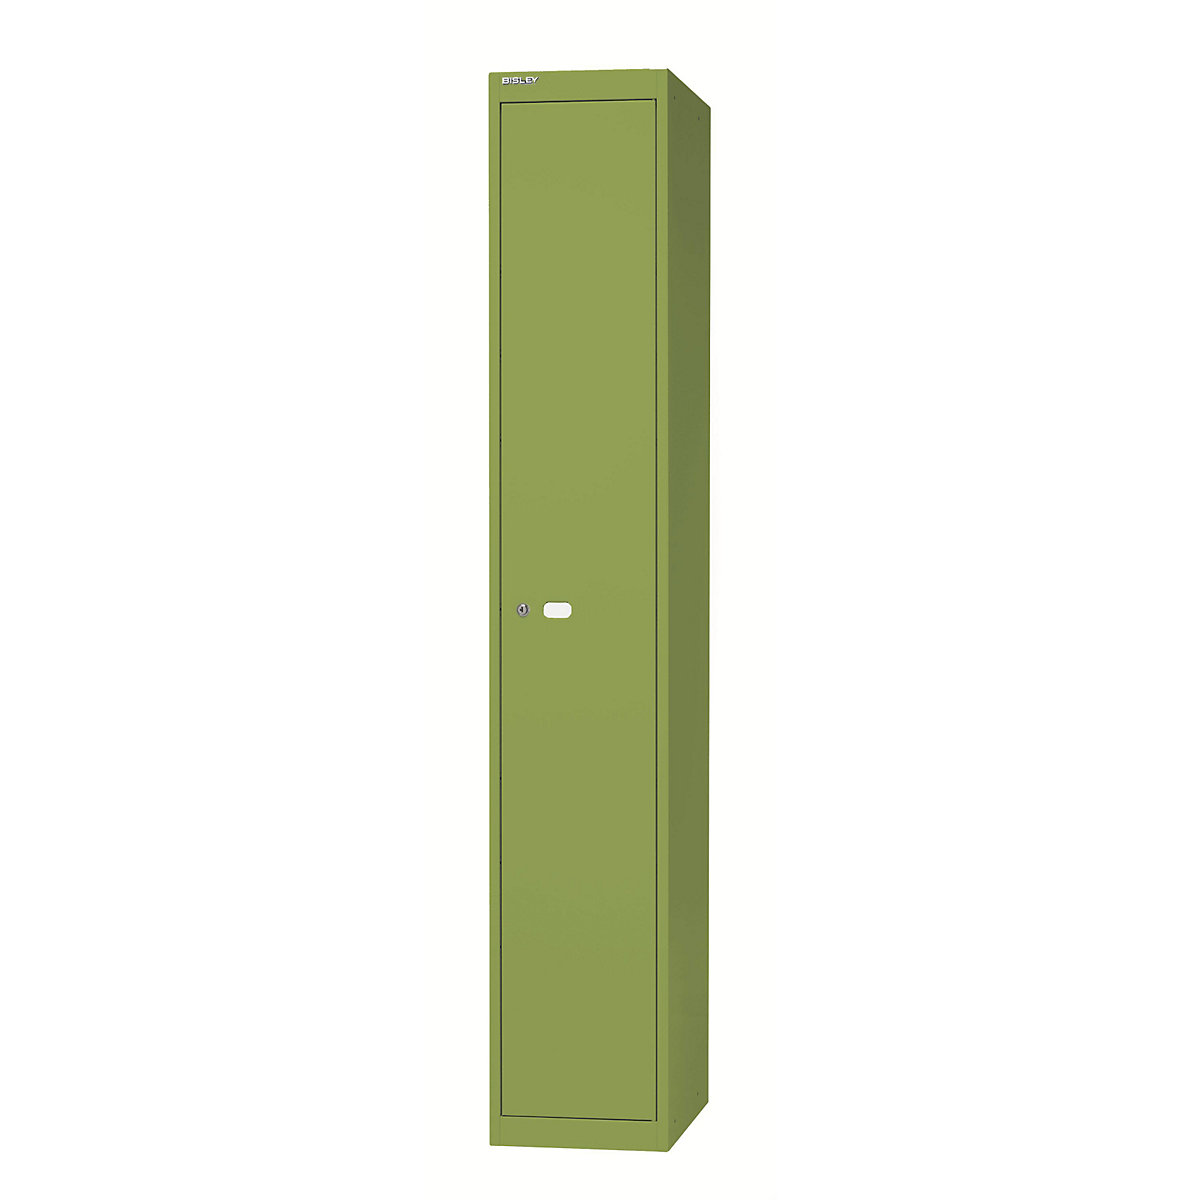 BISLEY OFFICE Garderobensystem, 1 Abteil, Tiefe 457 mm, mit 1 Hutfachboden, 1 Kleiderstange, grün